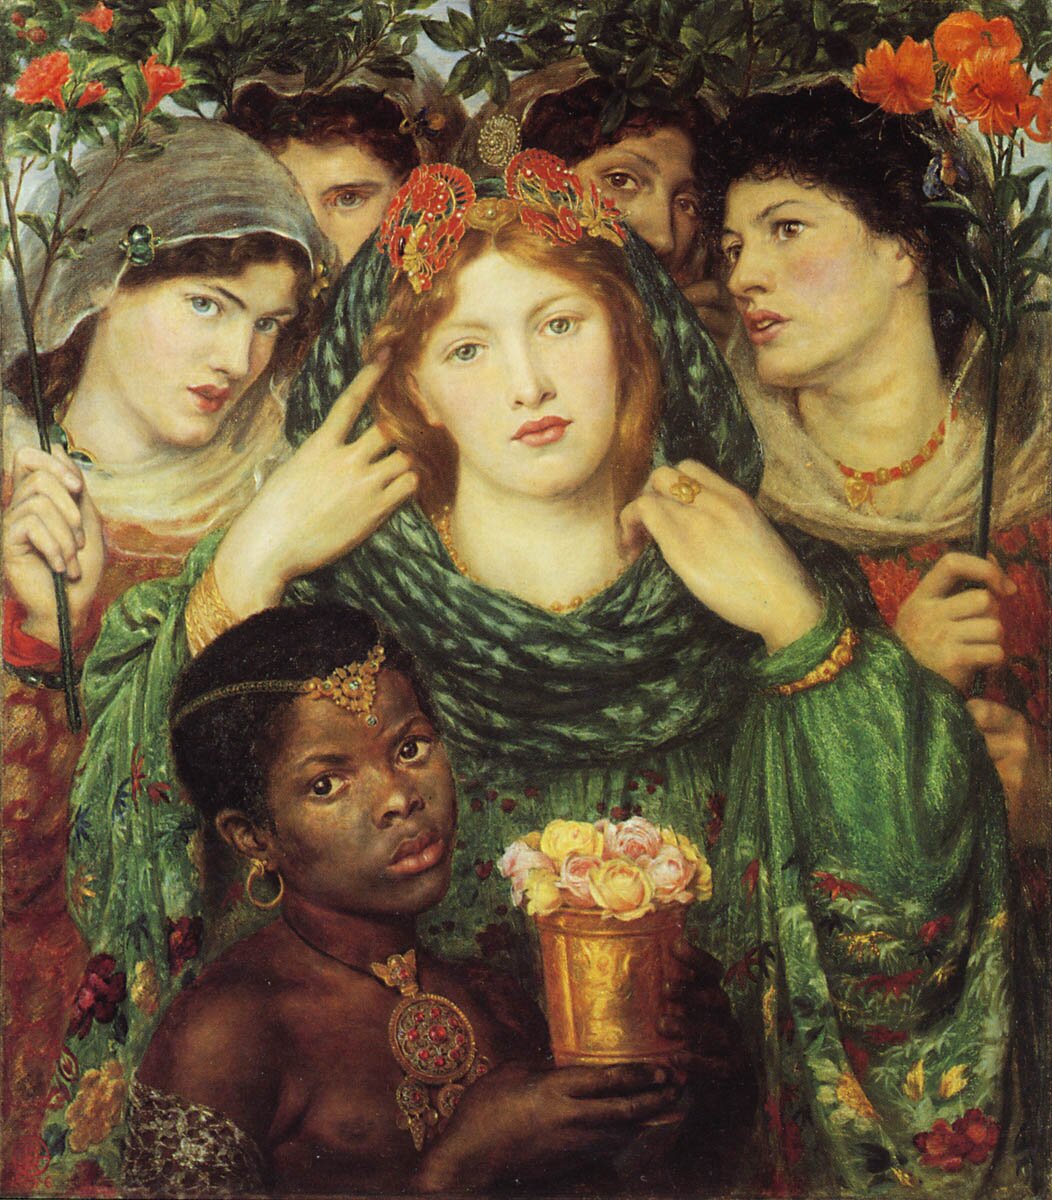 Oblubienica Źródło: Dante Gabriel Rossetti, Oblubienica, 1865-1866, olej na płótnie, Tate Britain, Londyn, domena publiczna.